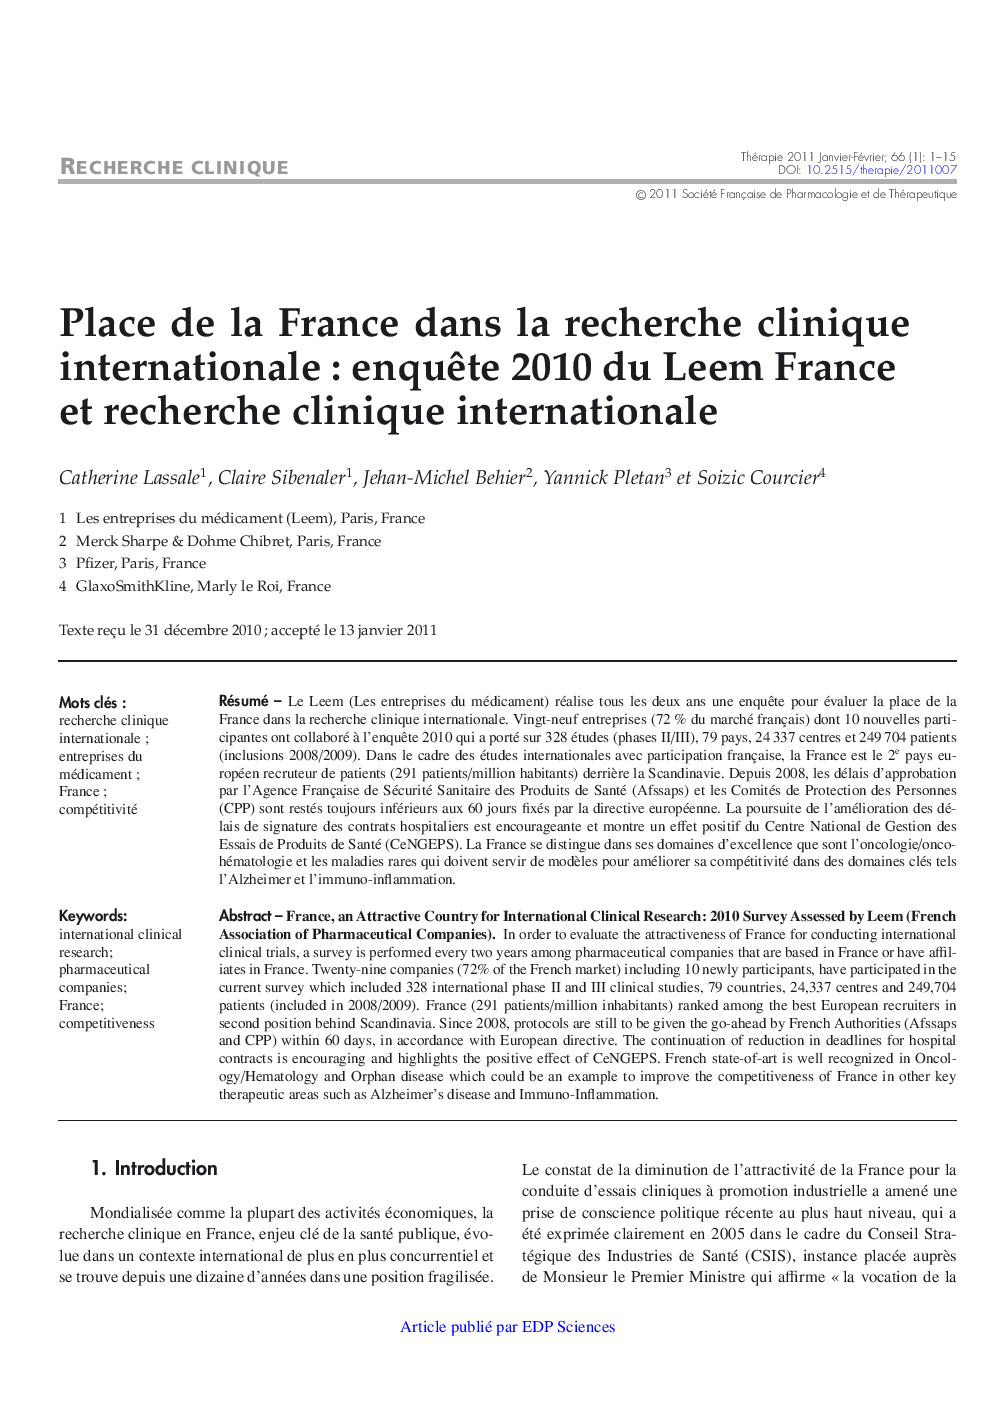 Place de la France dans la recherche clinique internationale : enquÃªte 2010 du Leem France et recherche clinique internationale